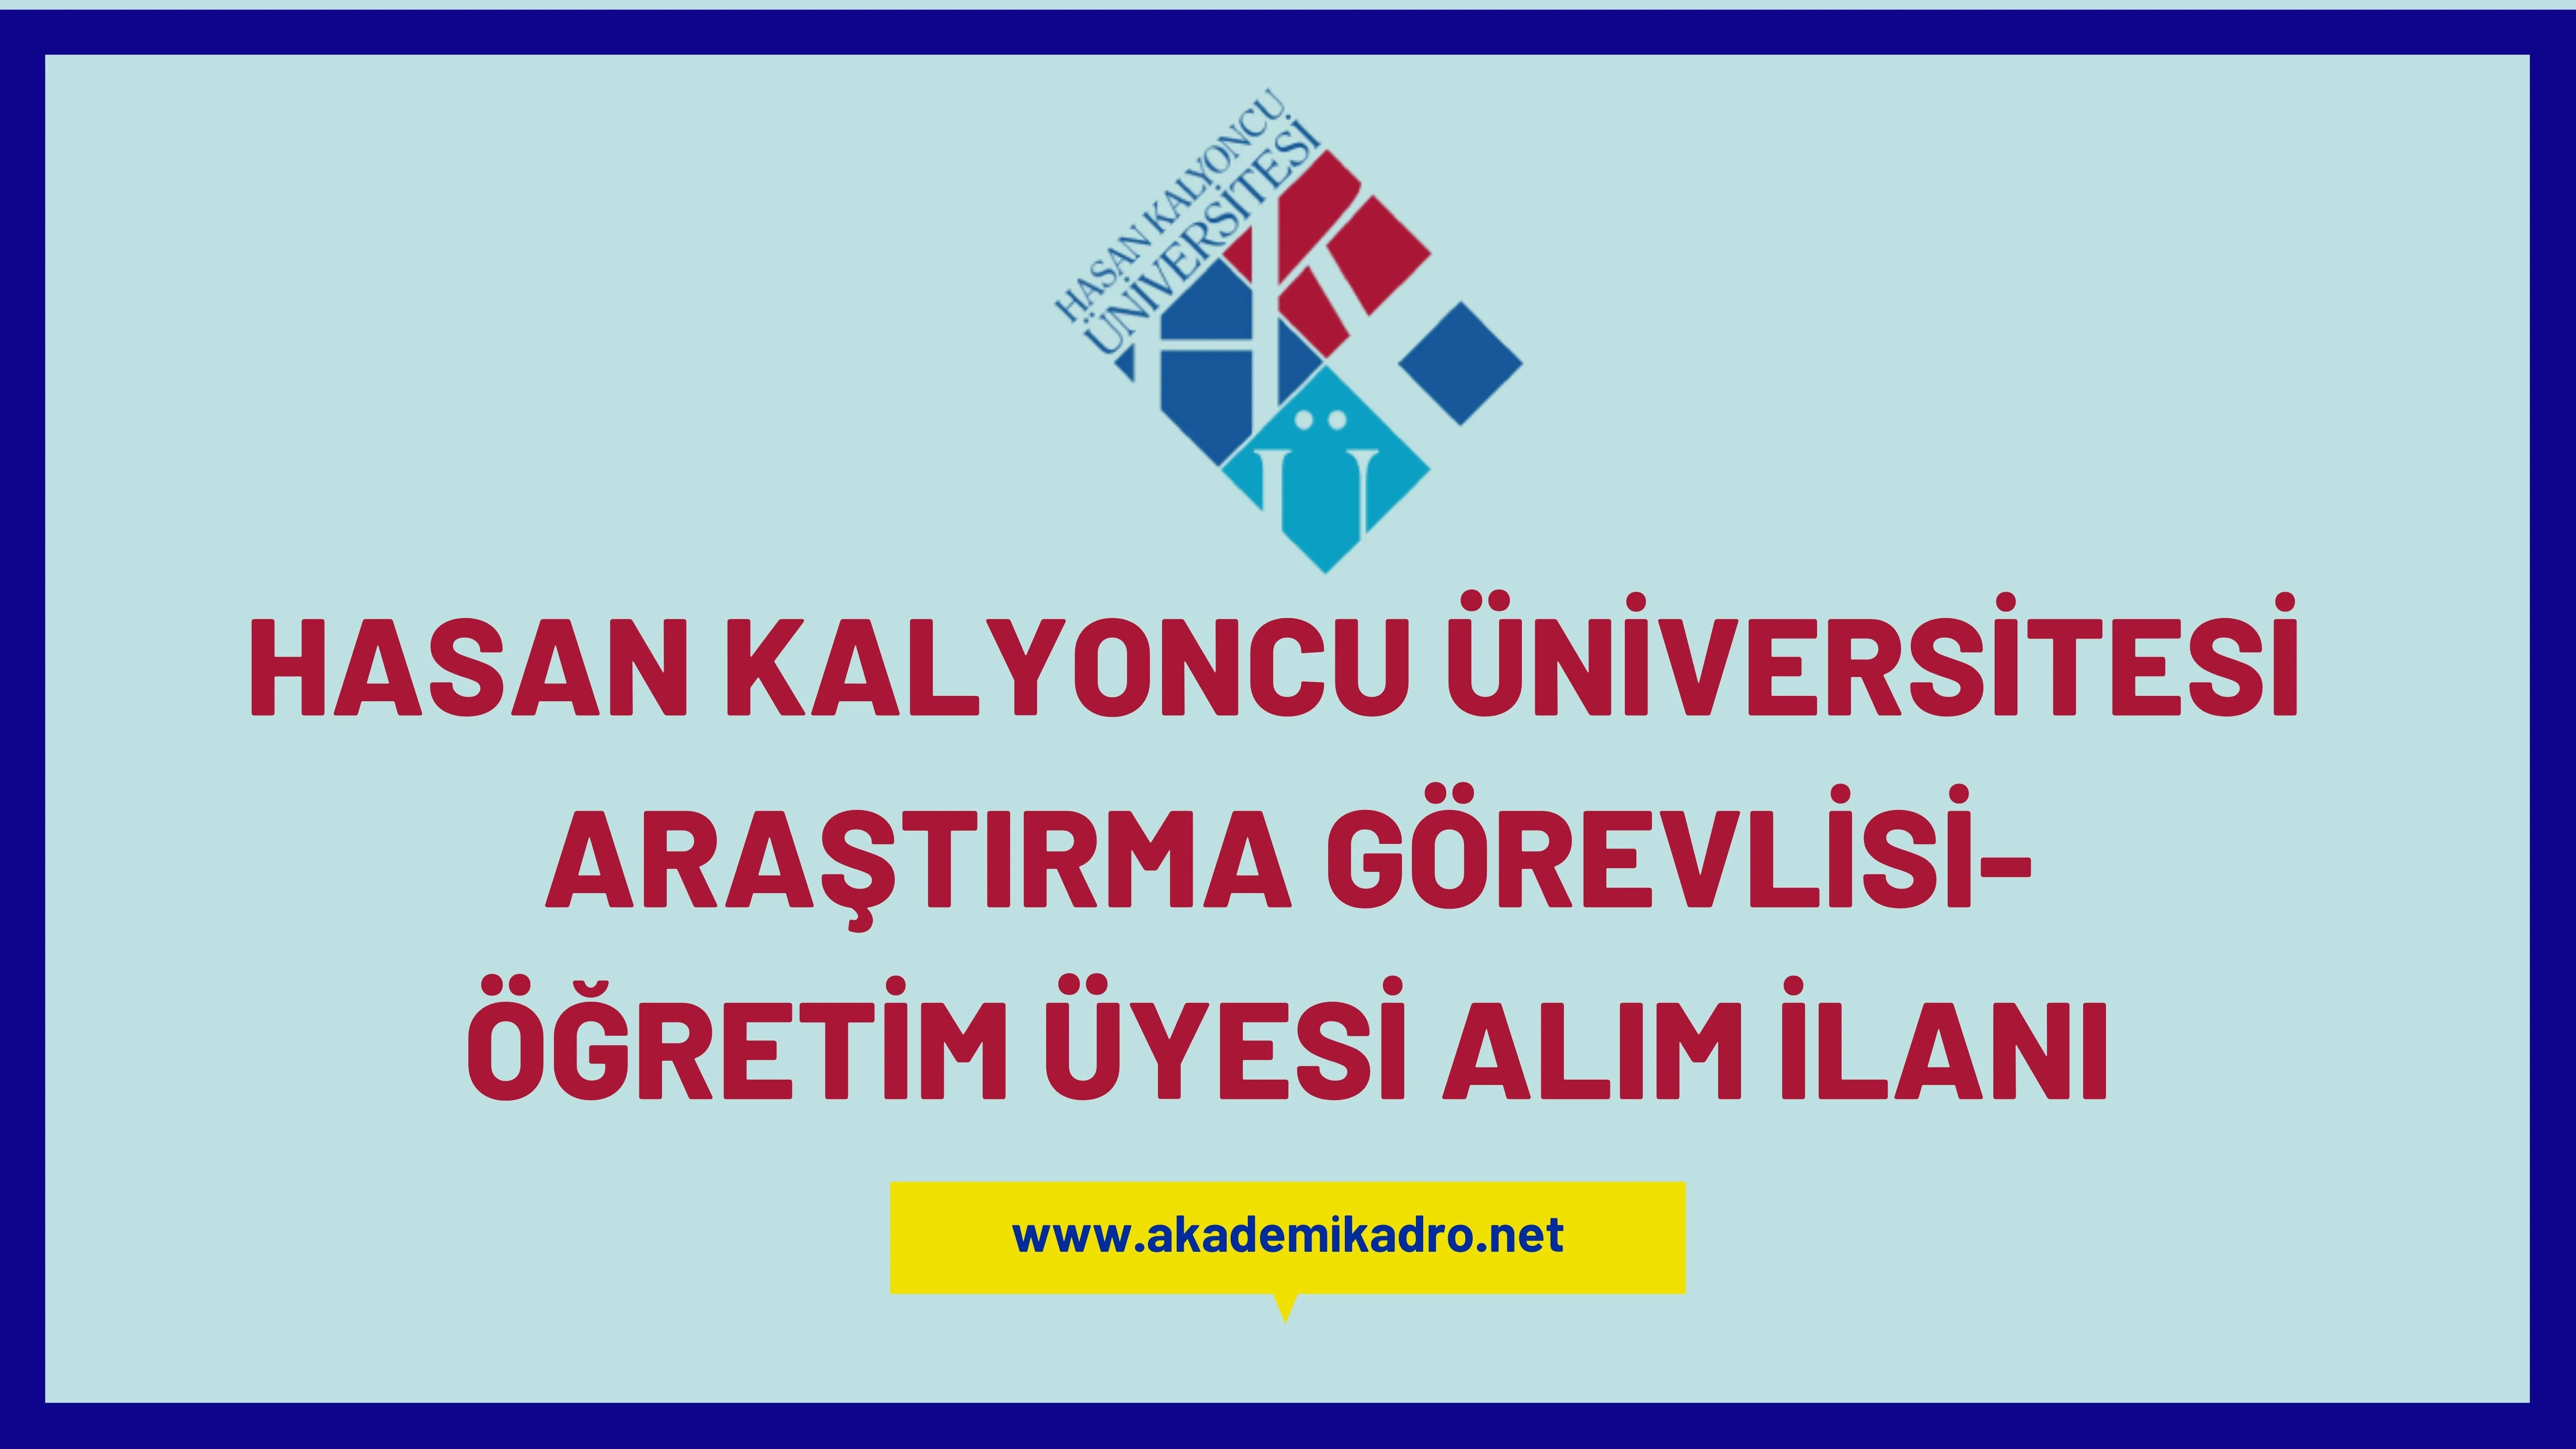 Hasan Kalyoncu Üniversitesi 5 Araştırma görevlisi ve birçok alandan 28 Öğretim üyesi alacak. Son başvuru tarihi 25 Ocak 2023.